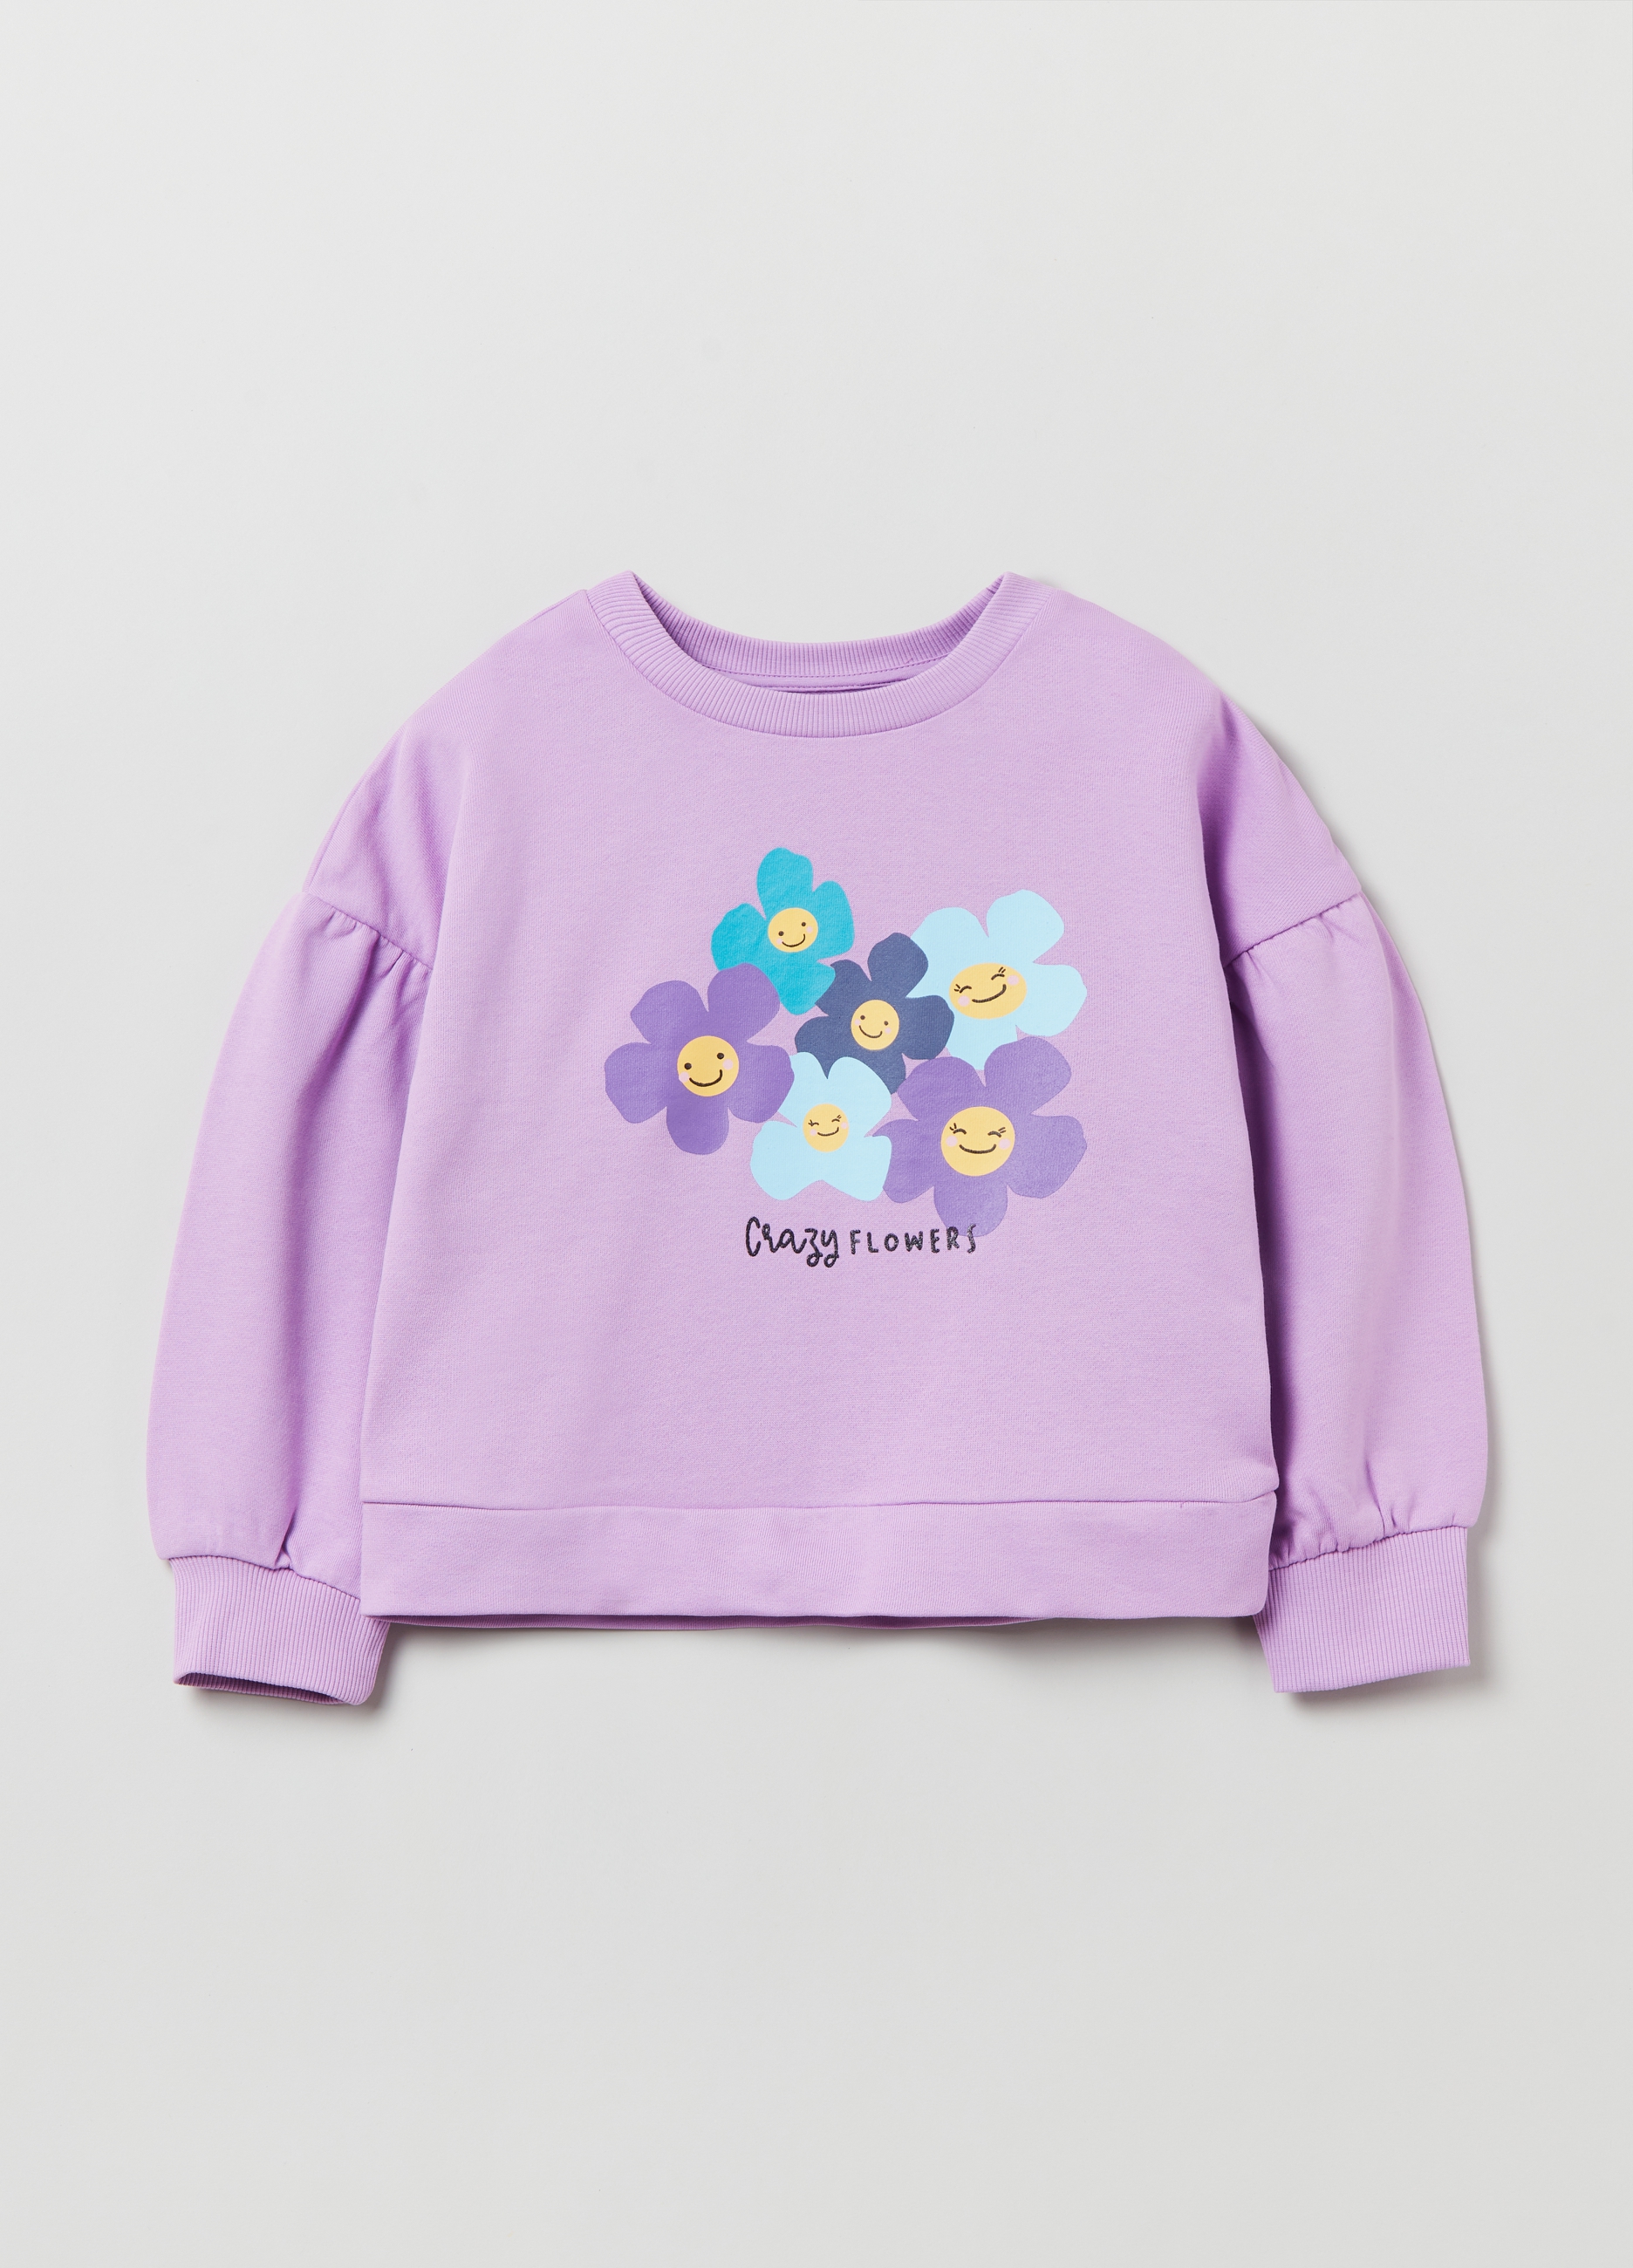 Фуфайка OVS для девочек, фиолетовая, 5-6 лет, 1893089 комплект трикотажный для девочек фуфайка футболка юбка шорты